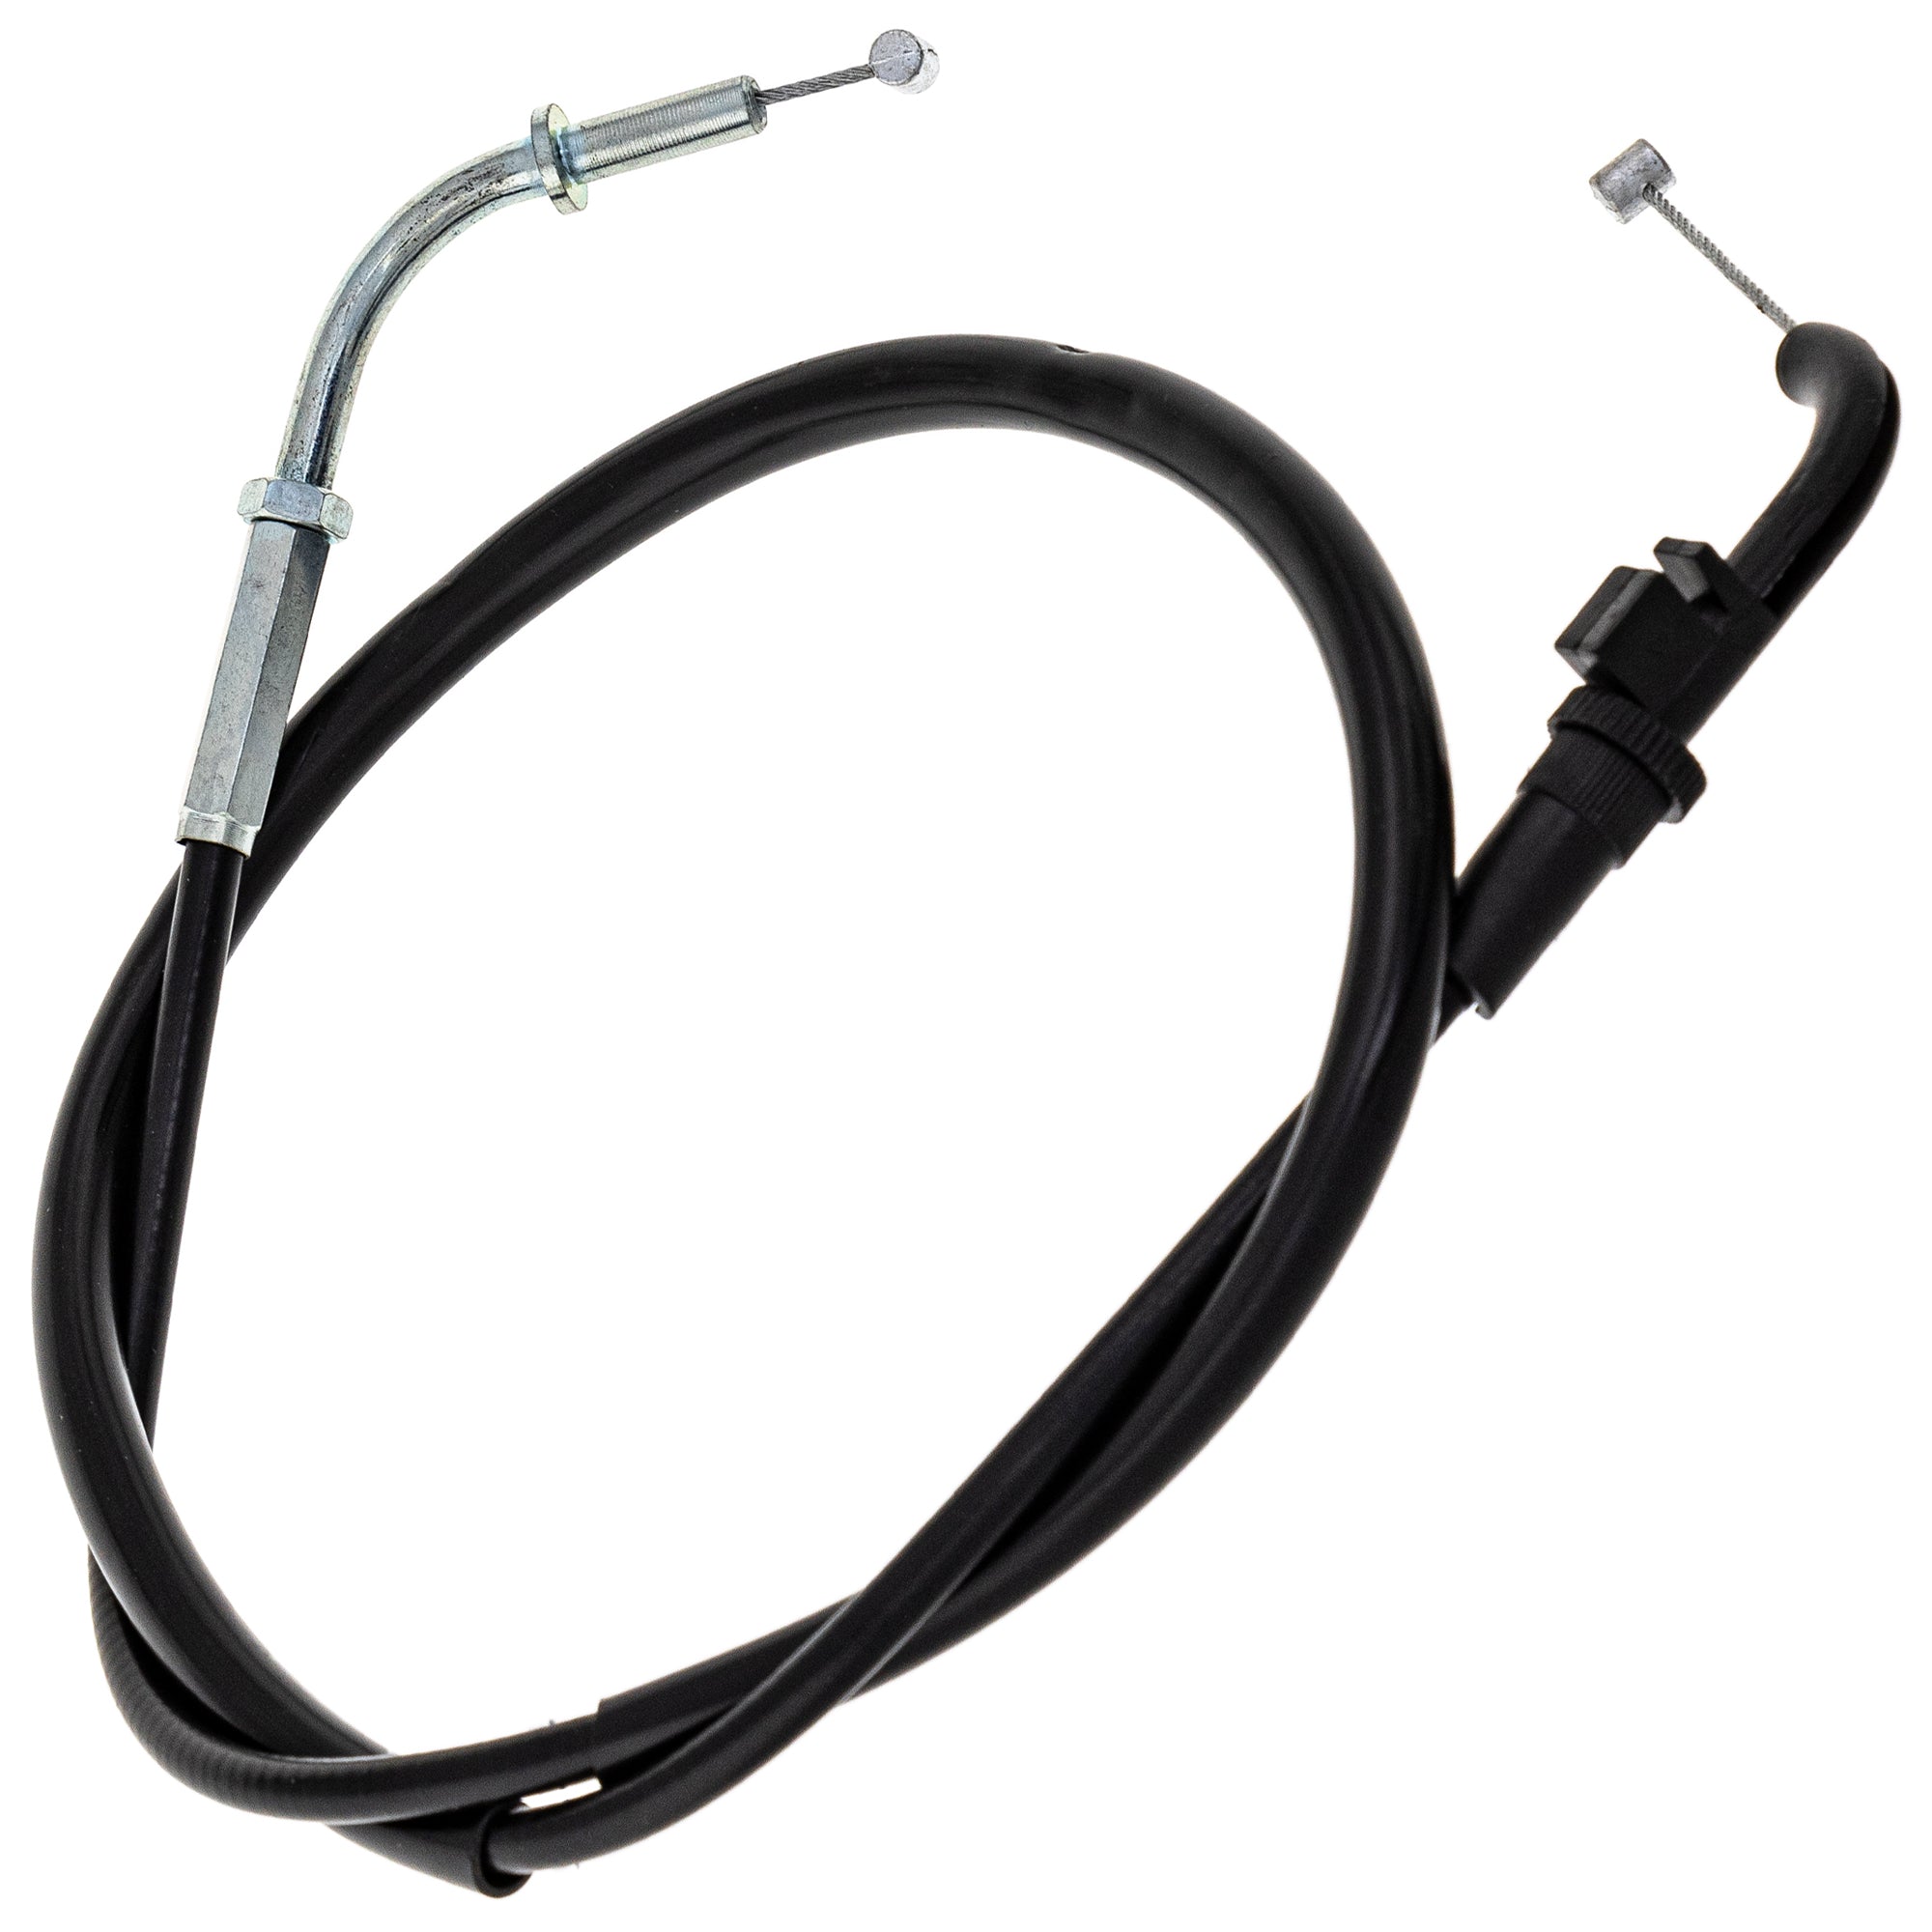 Throttle Cable for Kawasaki Ninja ZX6 ZX6R ZX600 54012-1394 54012-0012